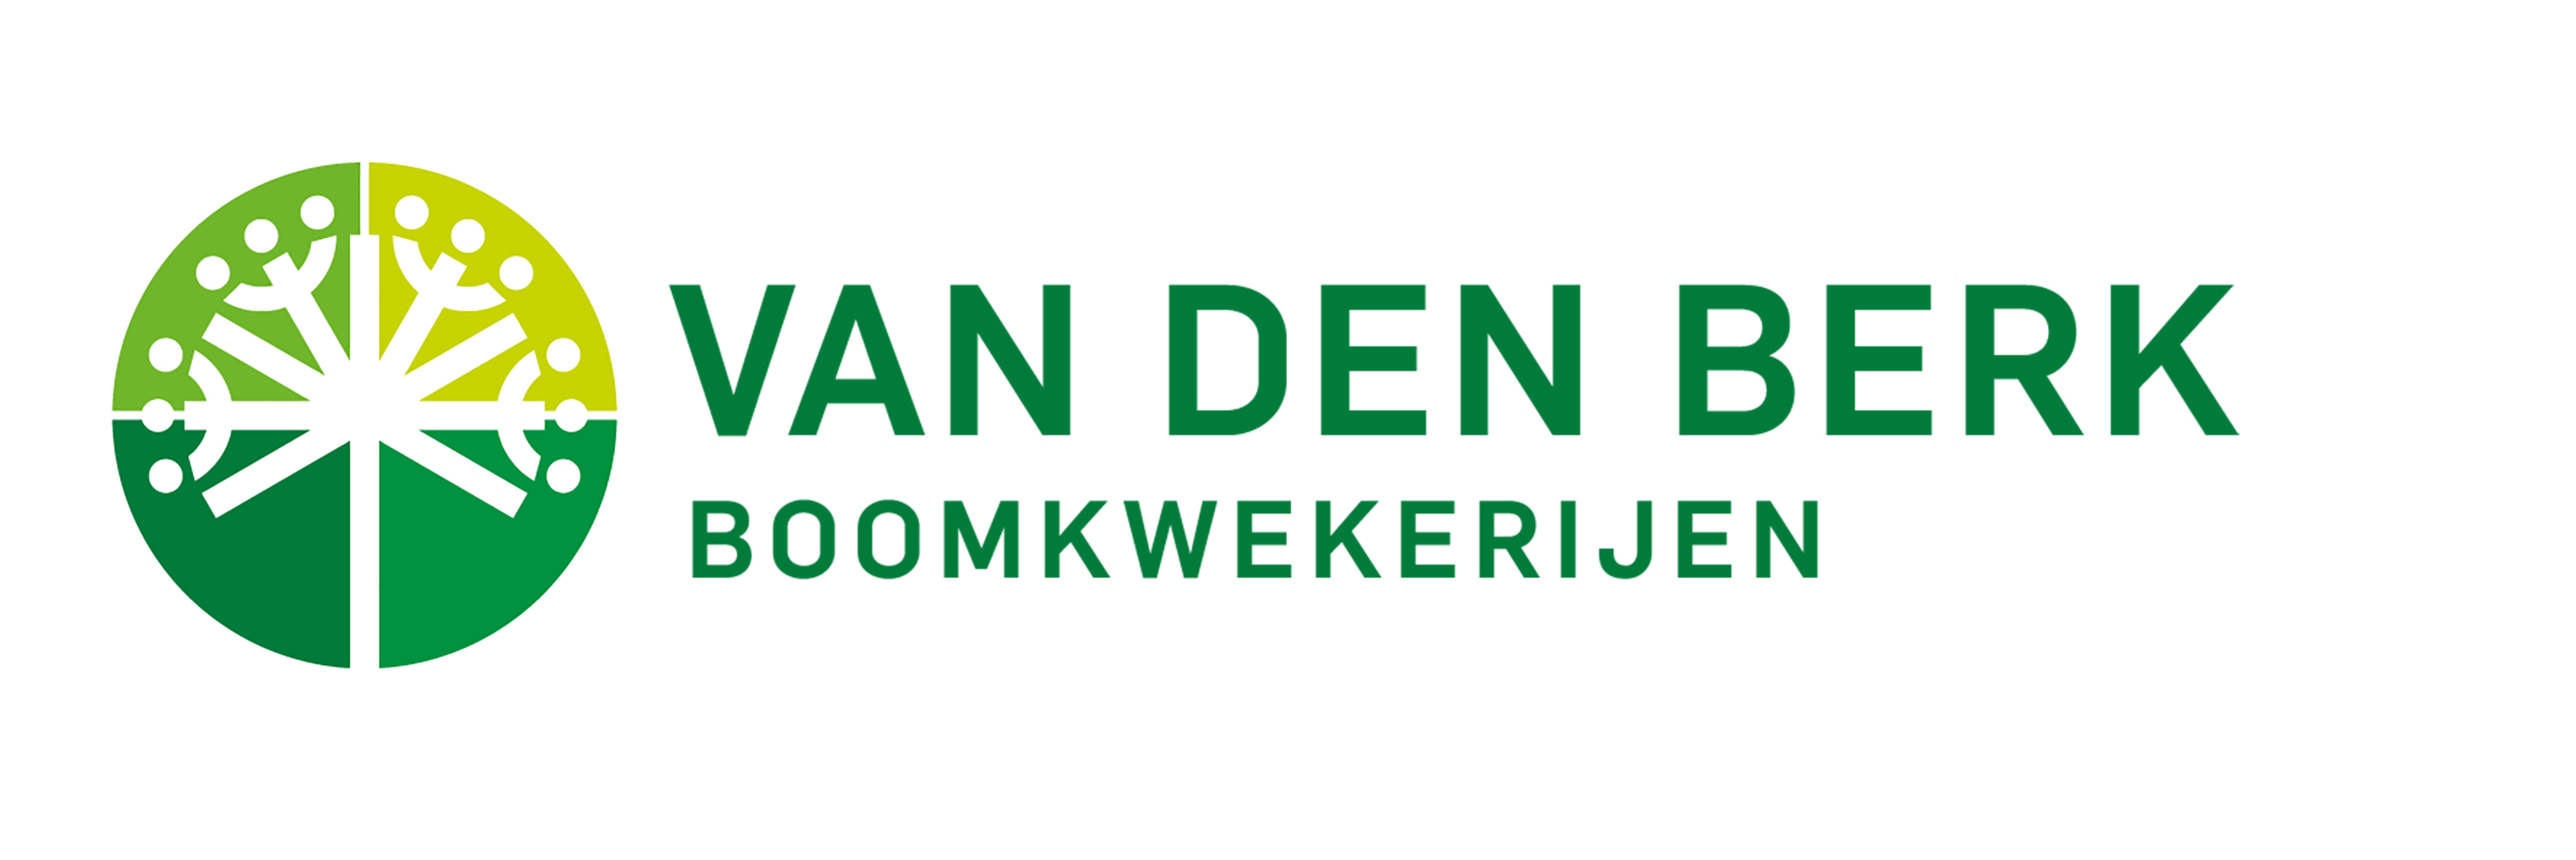 Logo Vd Berk